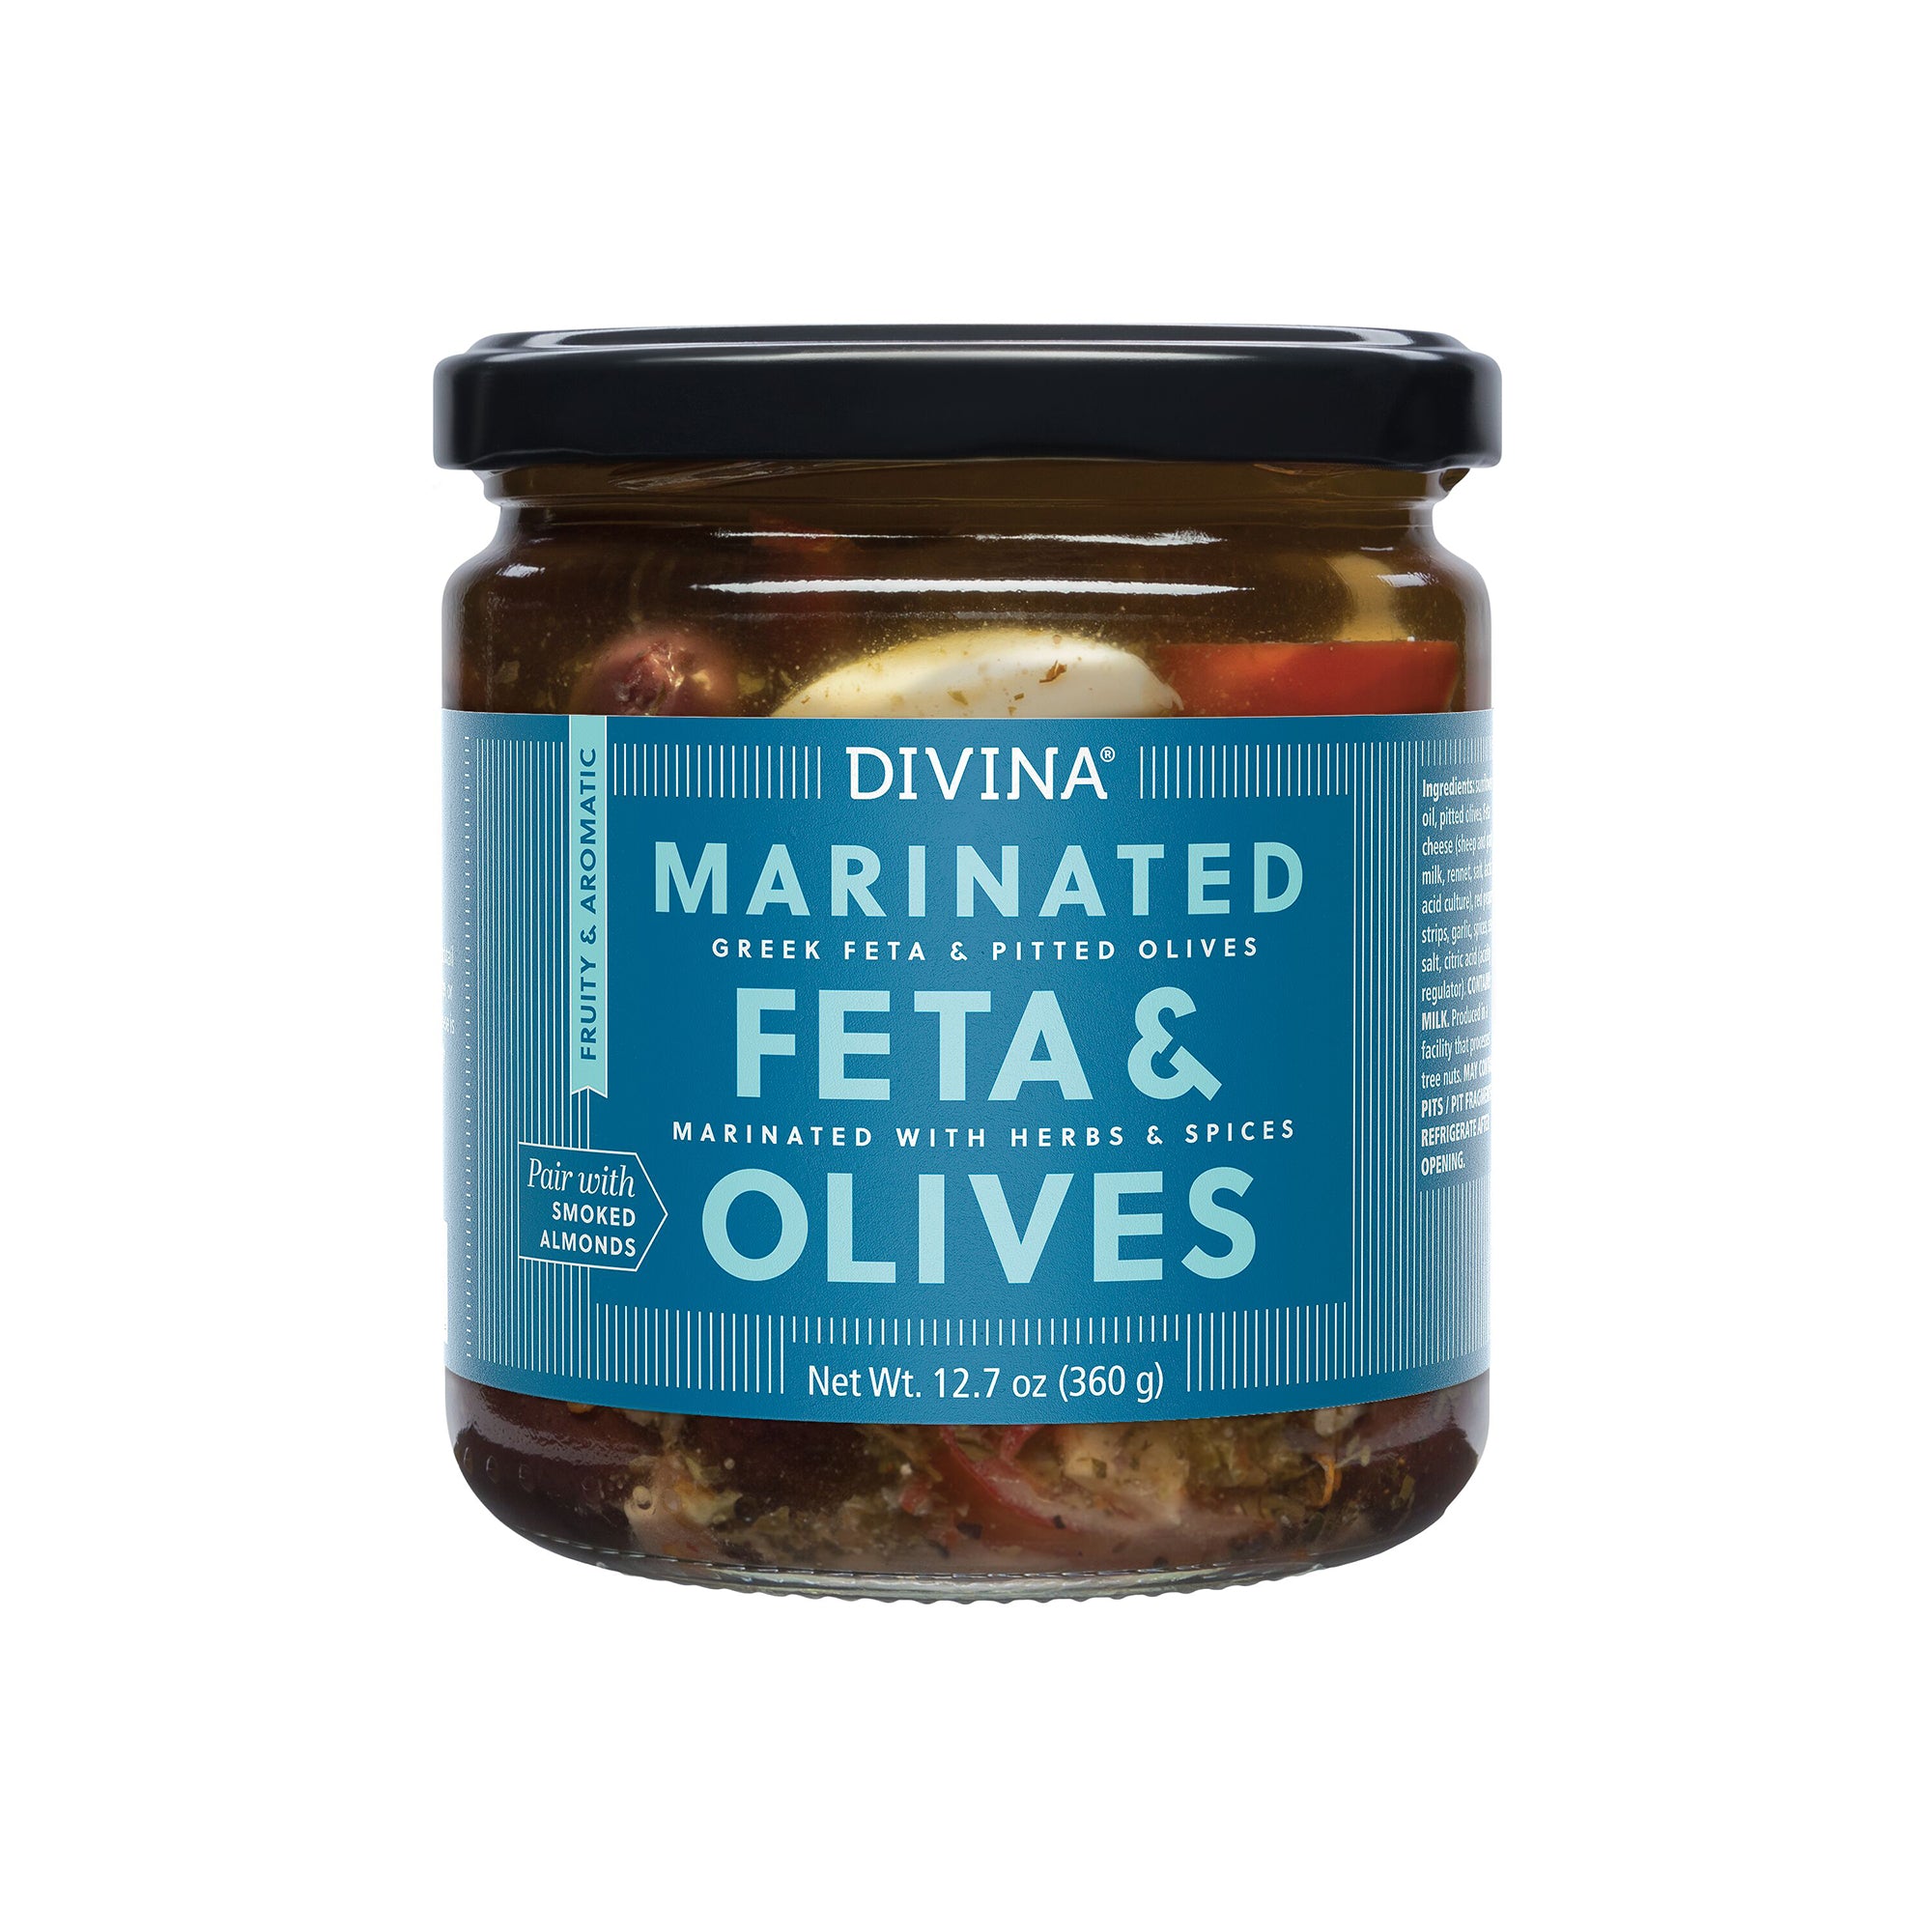 Marinated Feta & Olives